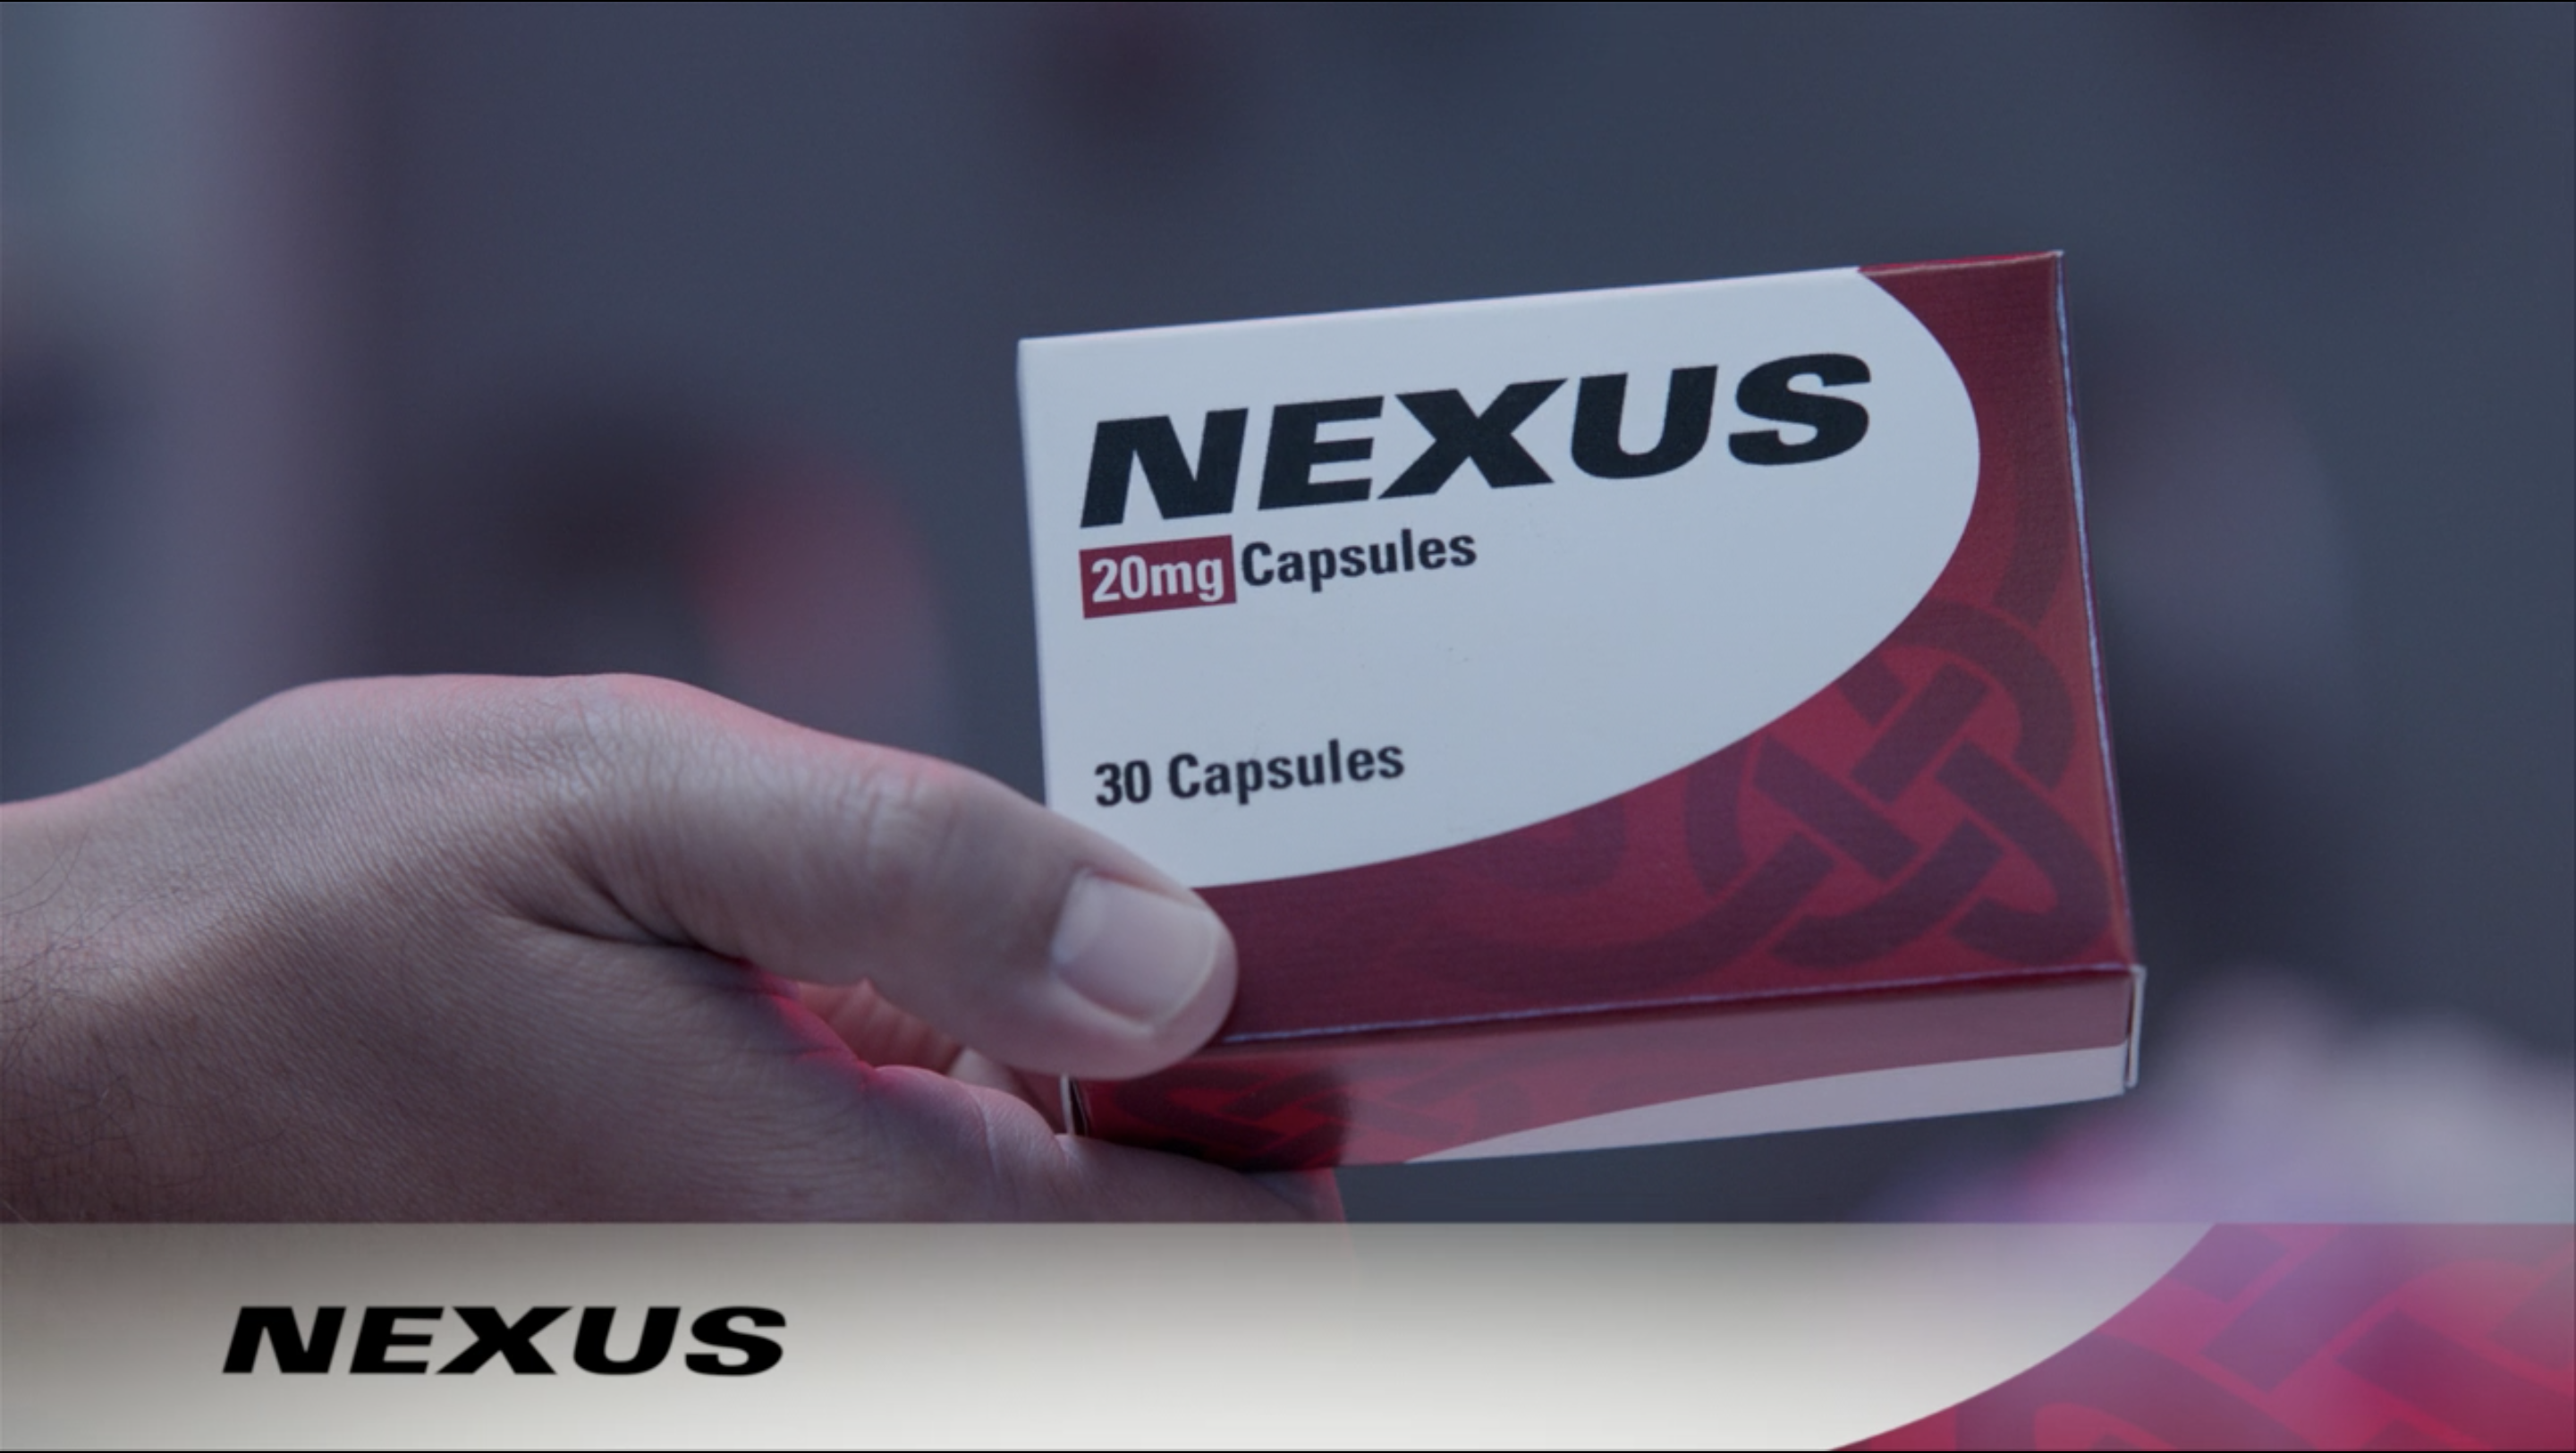 Qué significa 'Nexus' en el comercial de 'WandaVision'? •